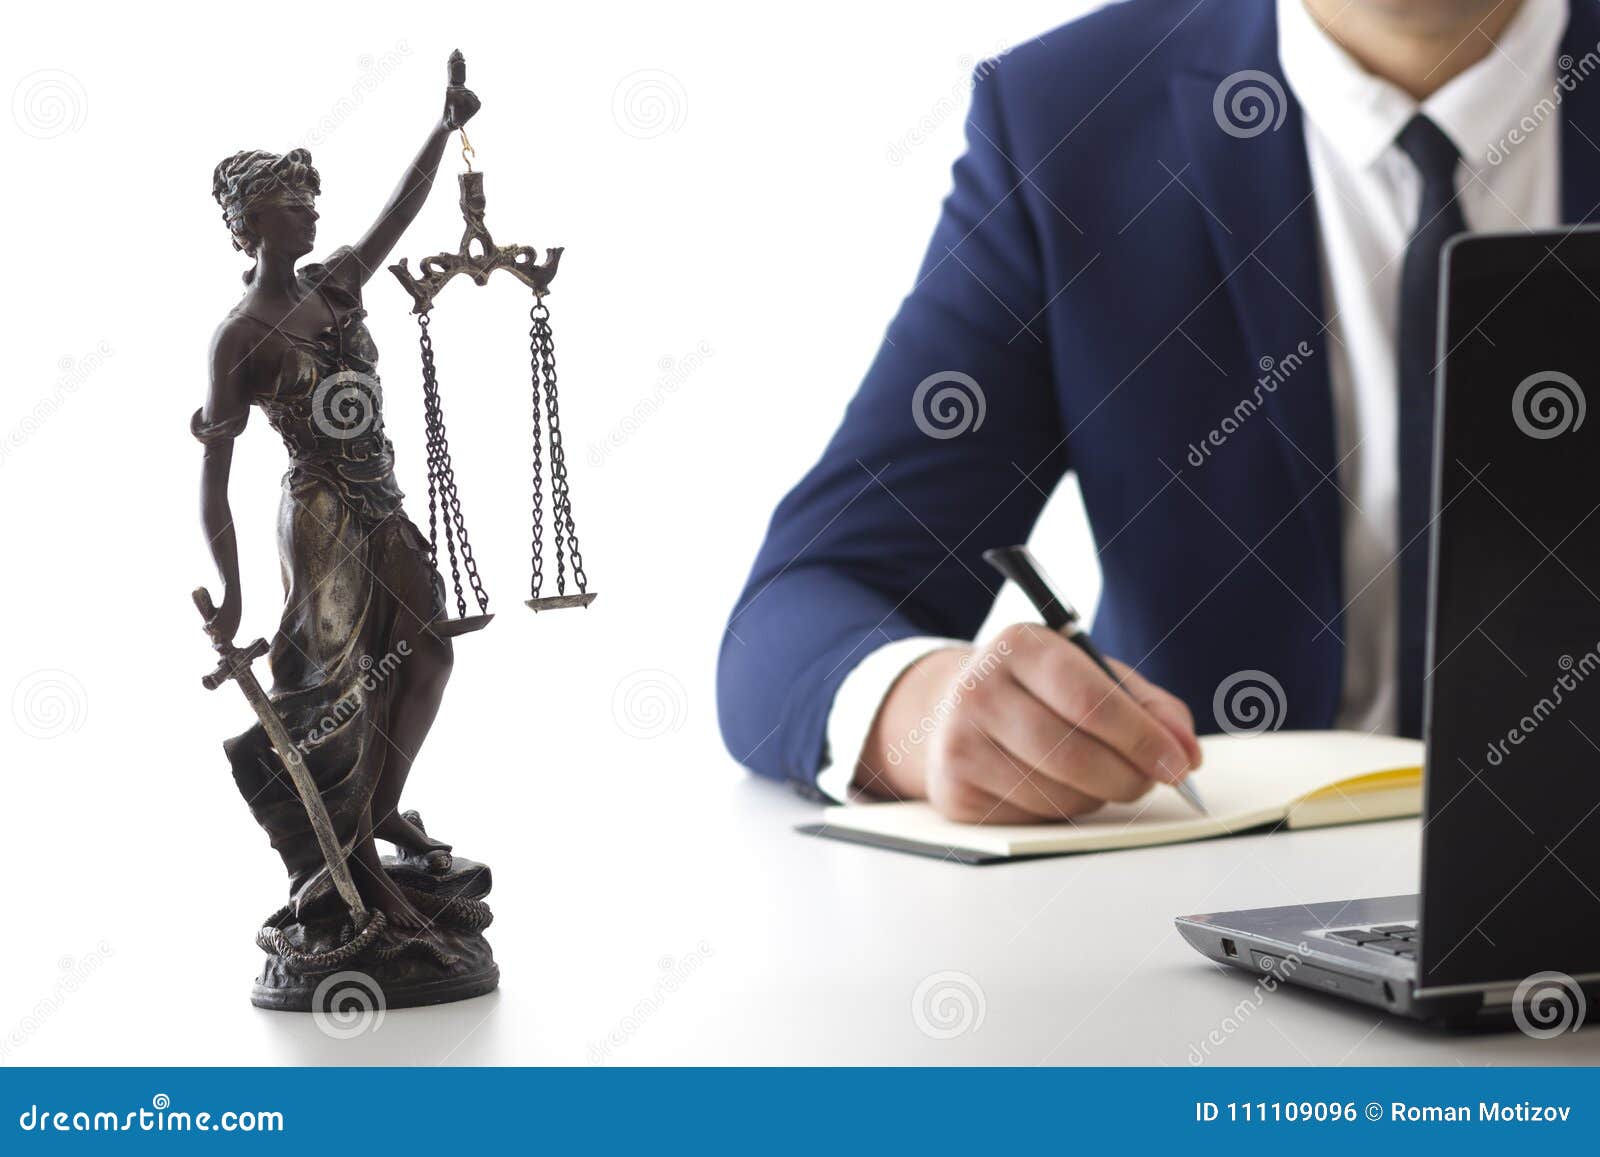 Роль адвоката в процессе. Представитель в суде. Костюм юриста в суде. Защитник в суде. Юрист представляющий интересы.